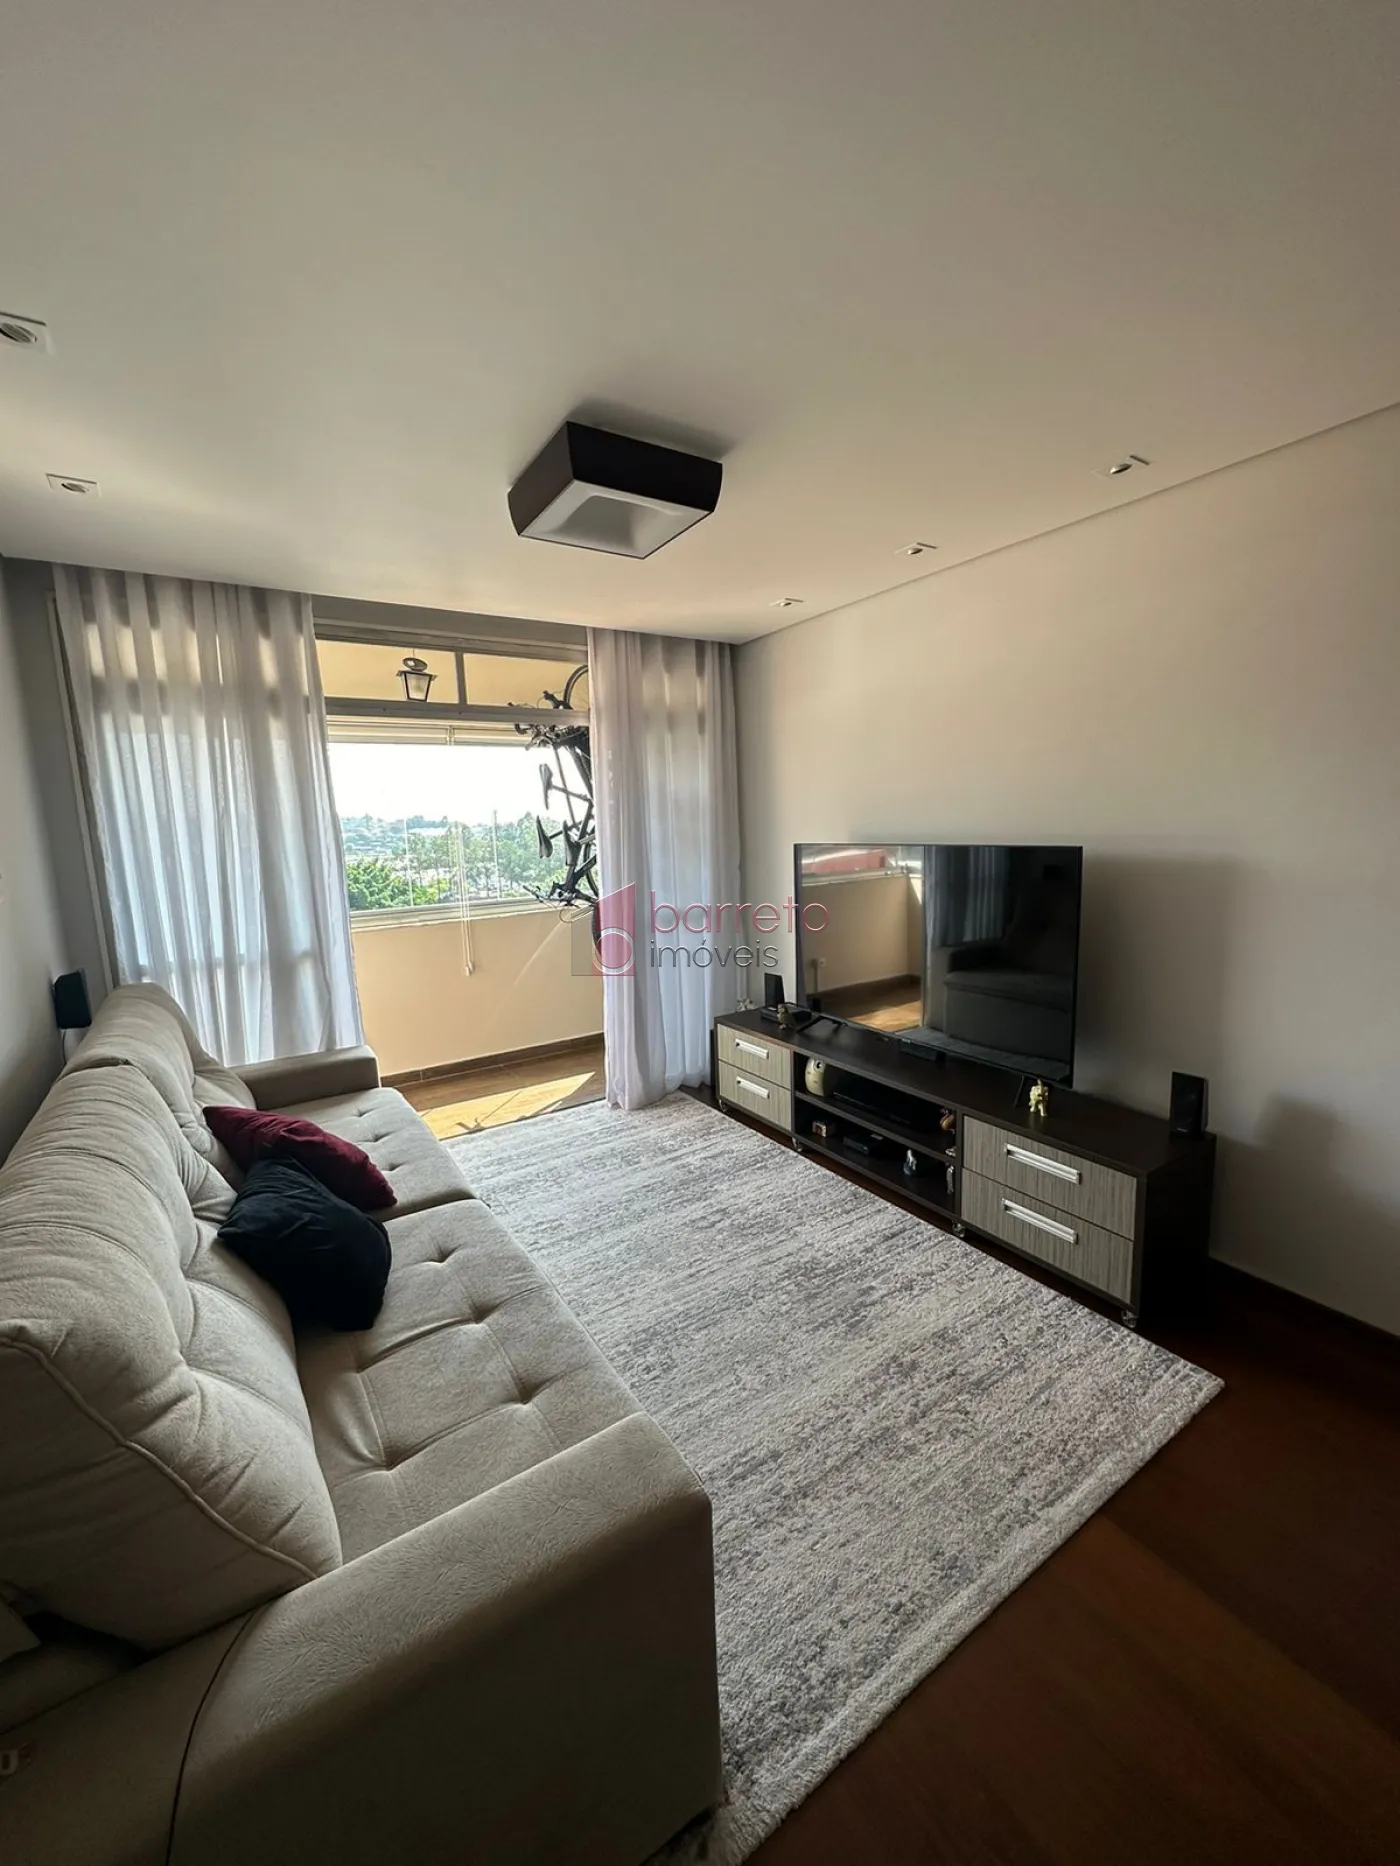 Comprar Apartamento / Padrão em Jundiaí R$ 760.000,00 - Foto 4